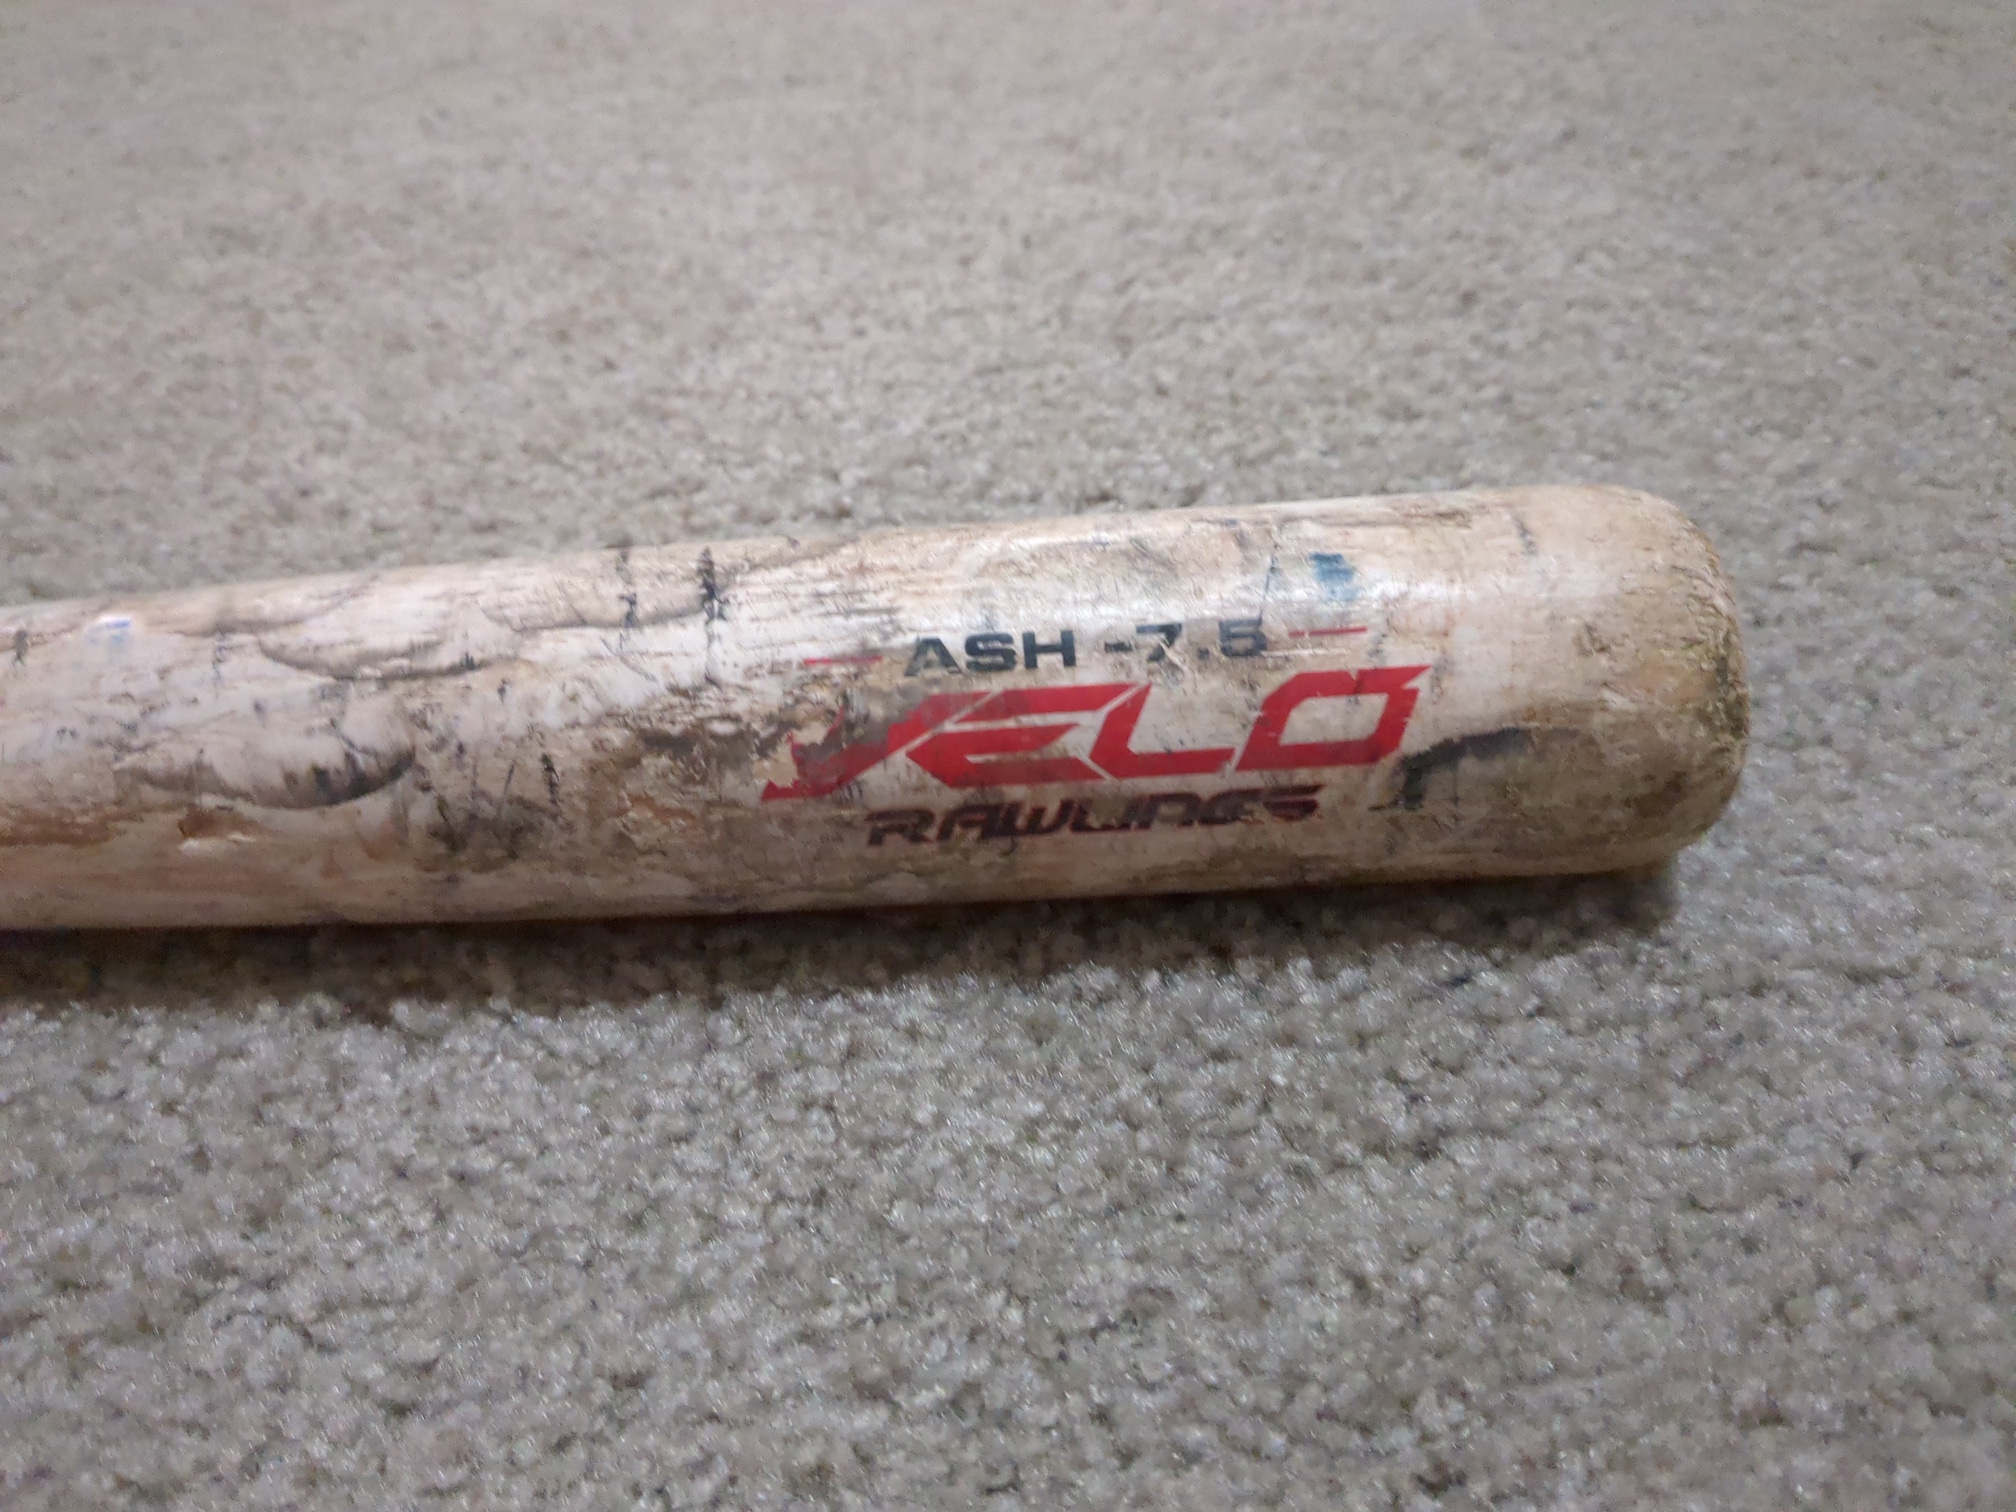 Used Training Rawlings Wood Velo Bat (-7.5) 22.5 oz 30"